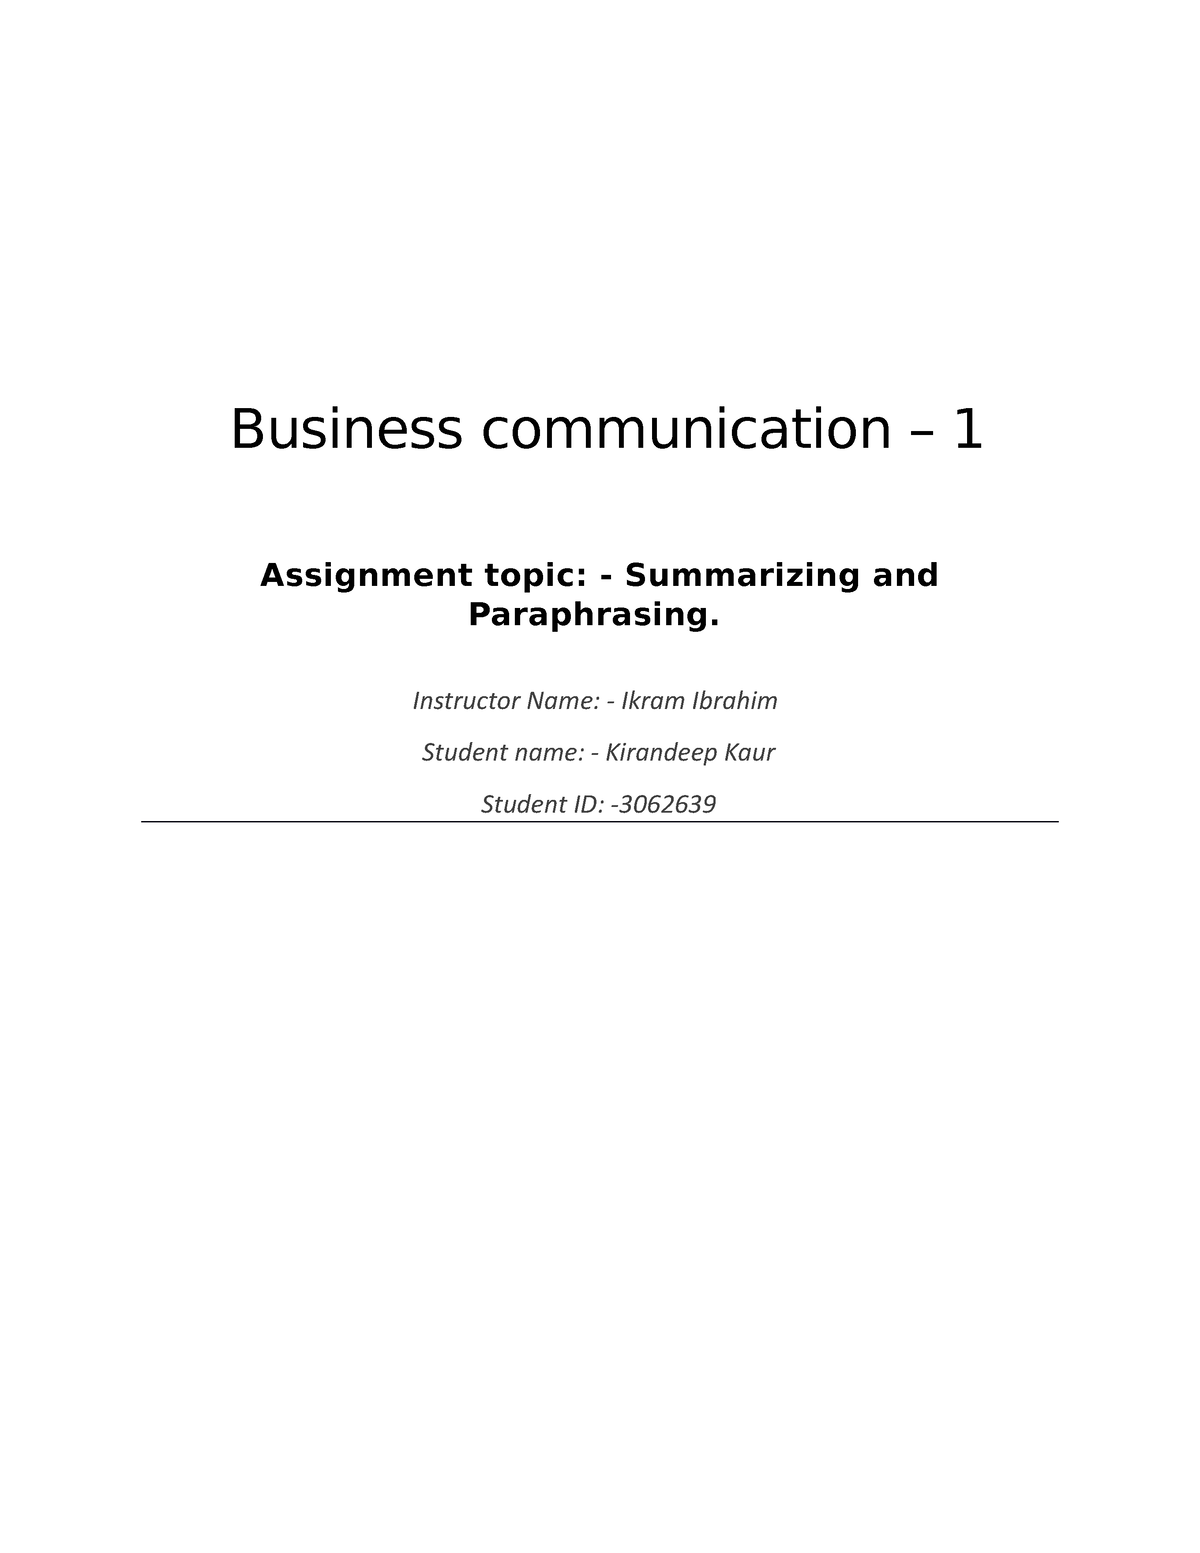 eng301 business communication assignment 1